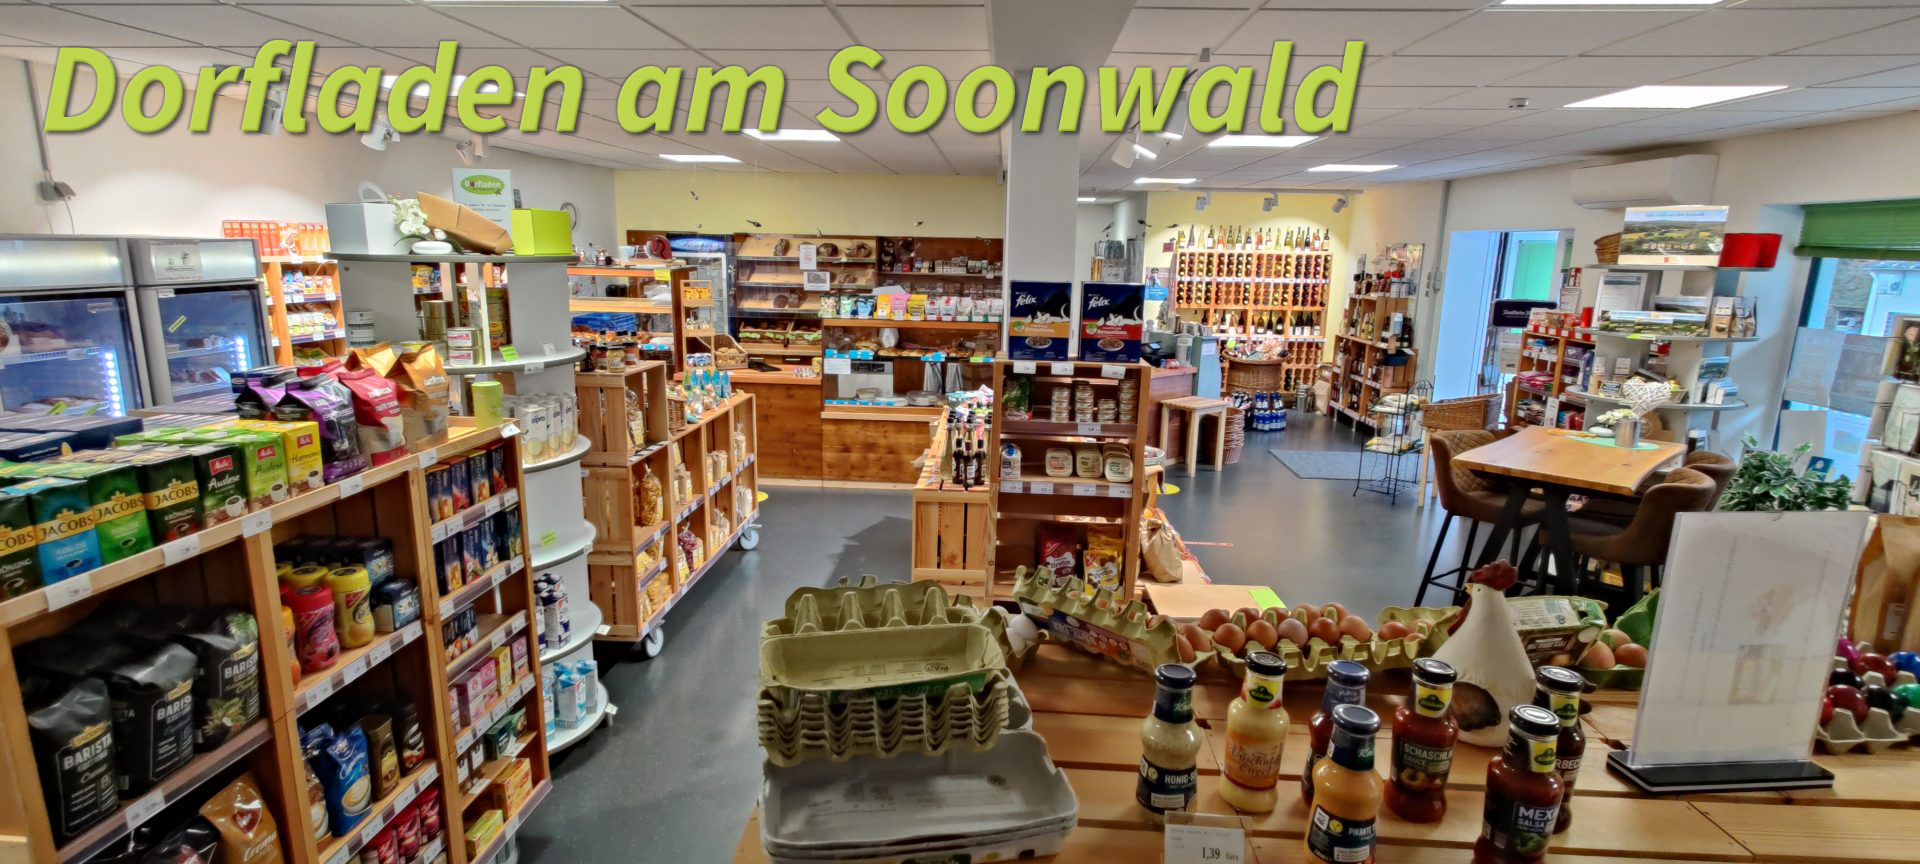 (c) Dorfladen-am-soonwald.de